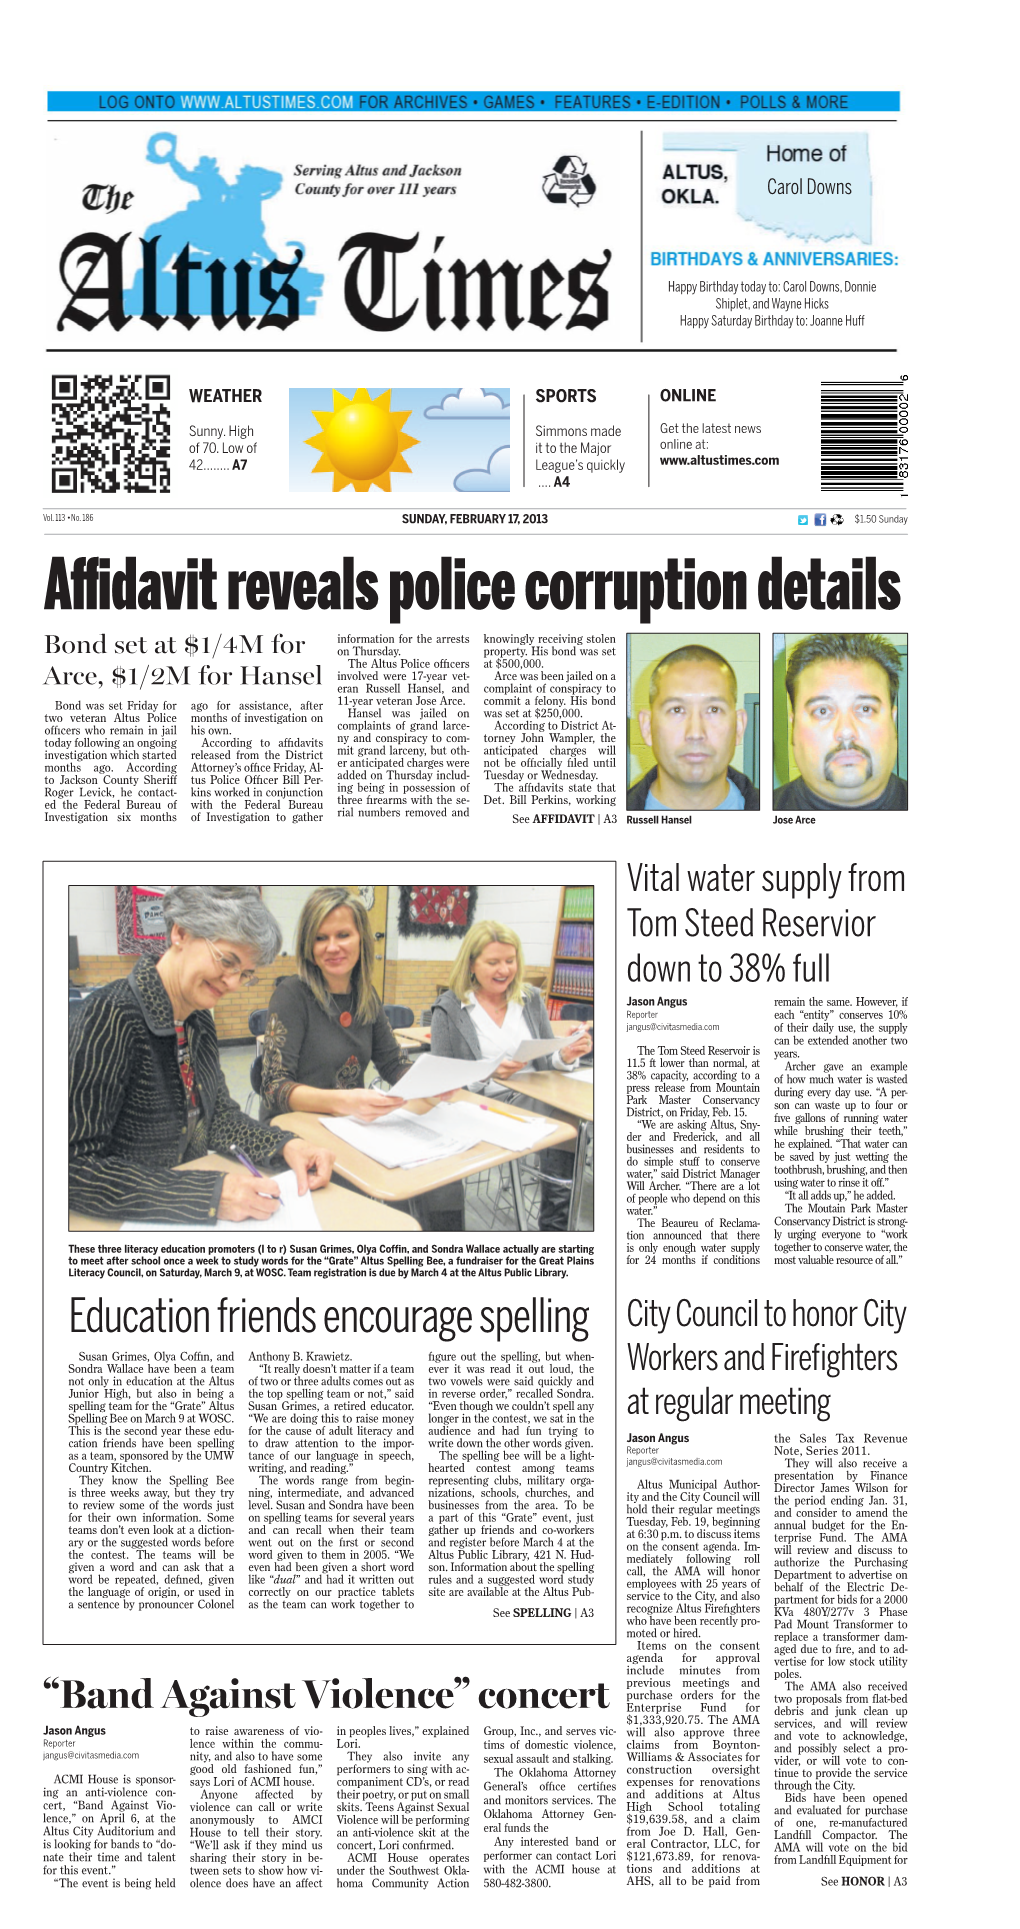 Affidavit Reveals Police Corruption Details Information for the Arrests Knowingly Receiving Stolen Bond Set at $1/4M for on Thursday